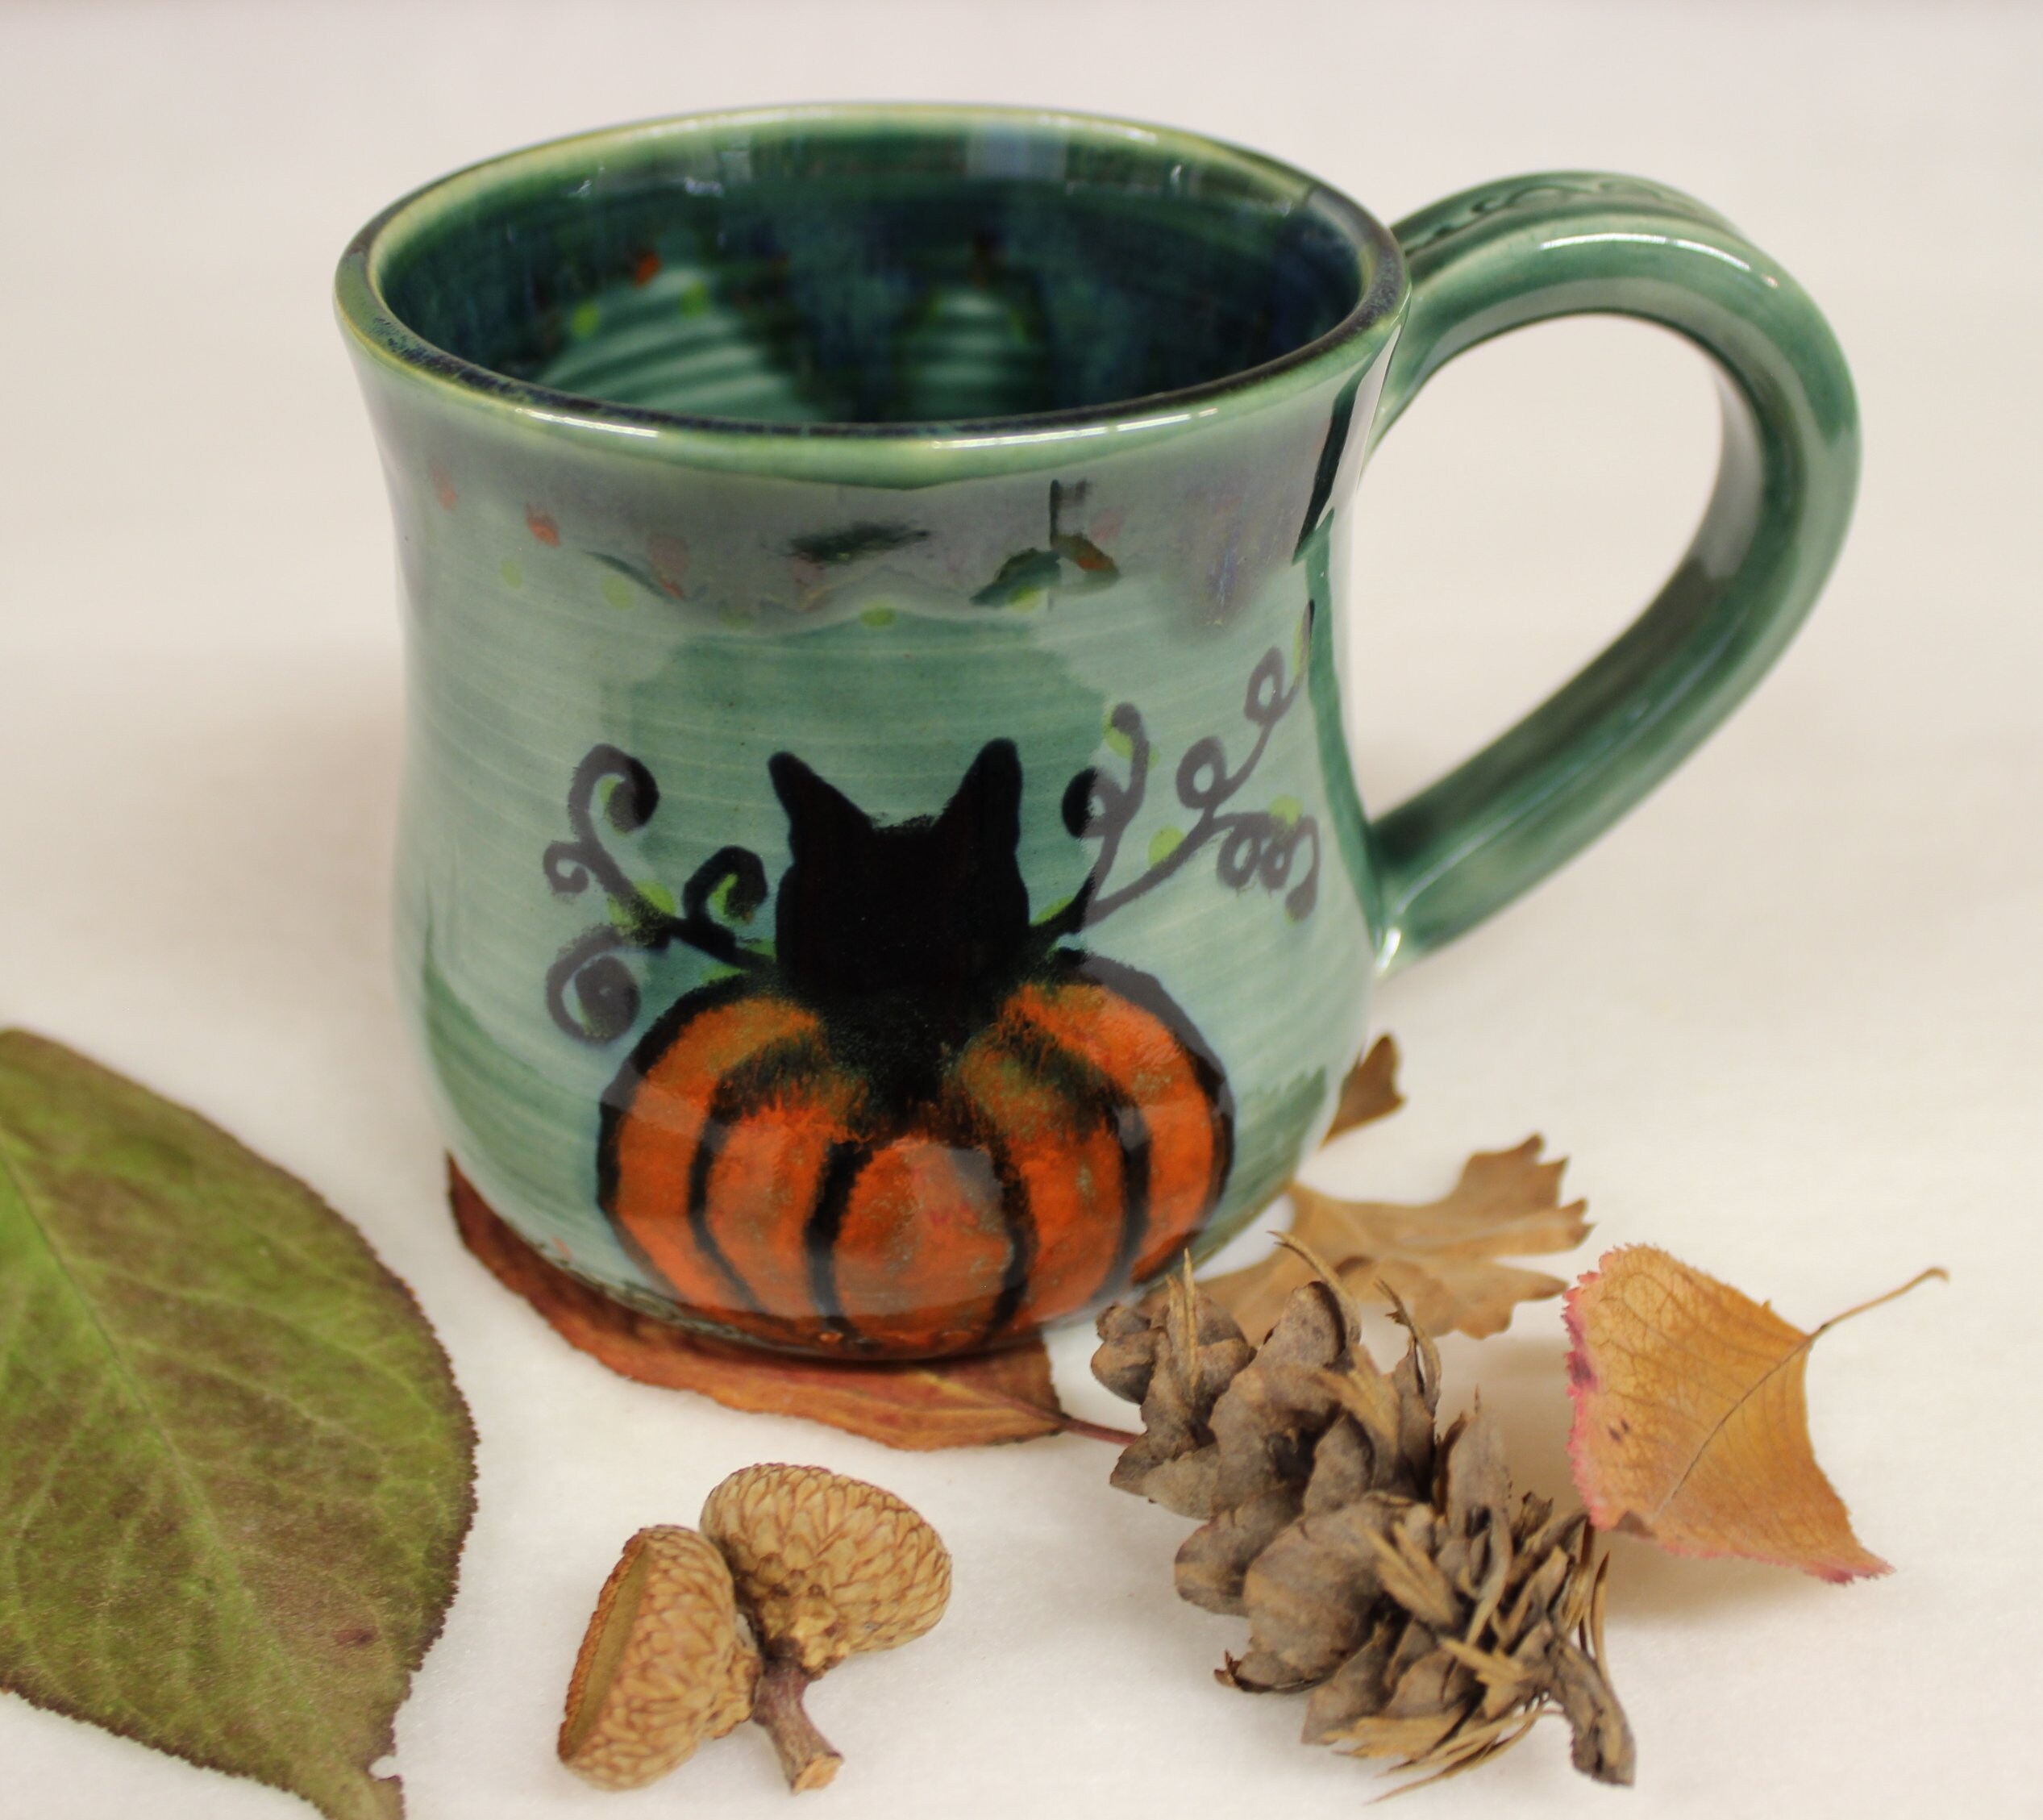 Handcrafted 'Pumpkin' Ceramic Espresso Cup & Saucer Set - Unique Pumpkin  Shaped Mug for Fall Celebrations – Enjoy Ceramic Art